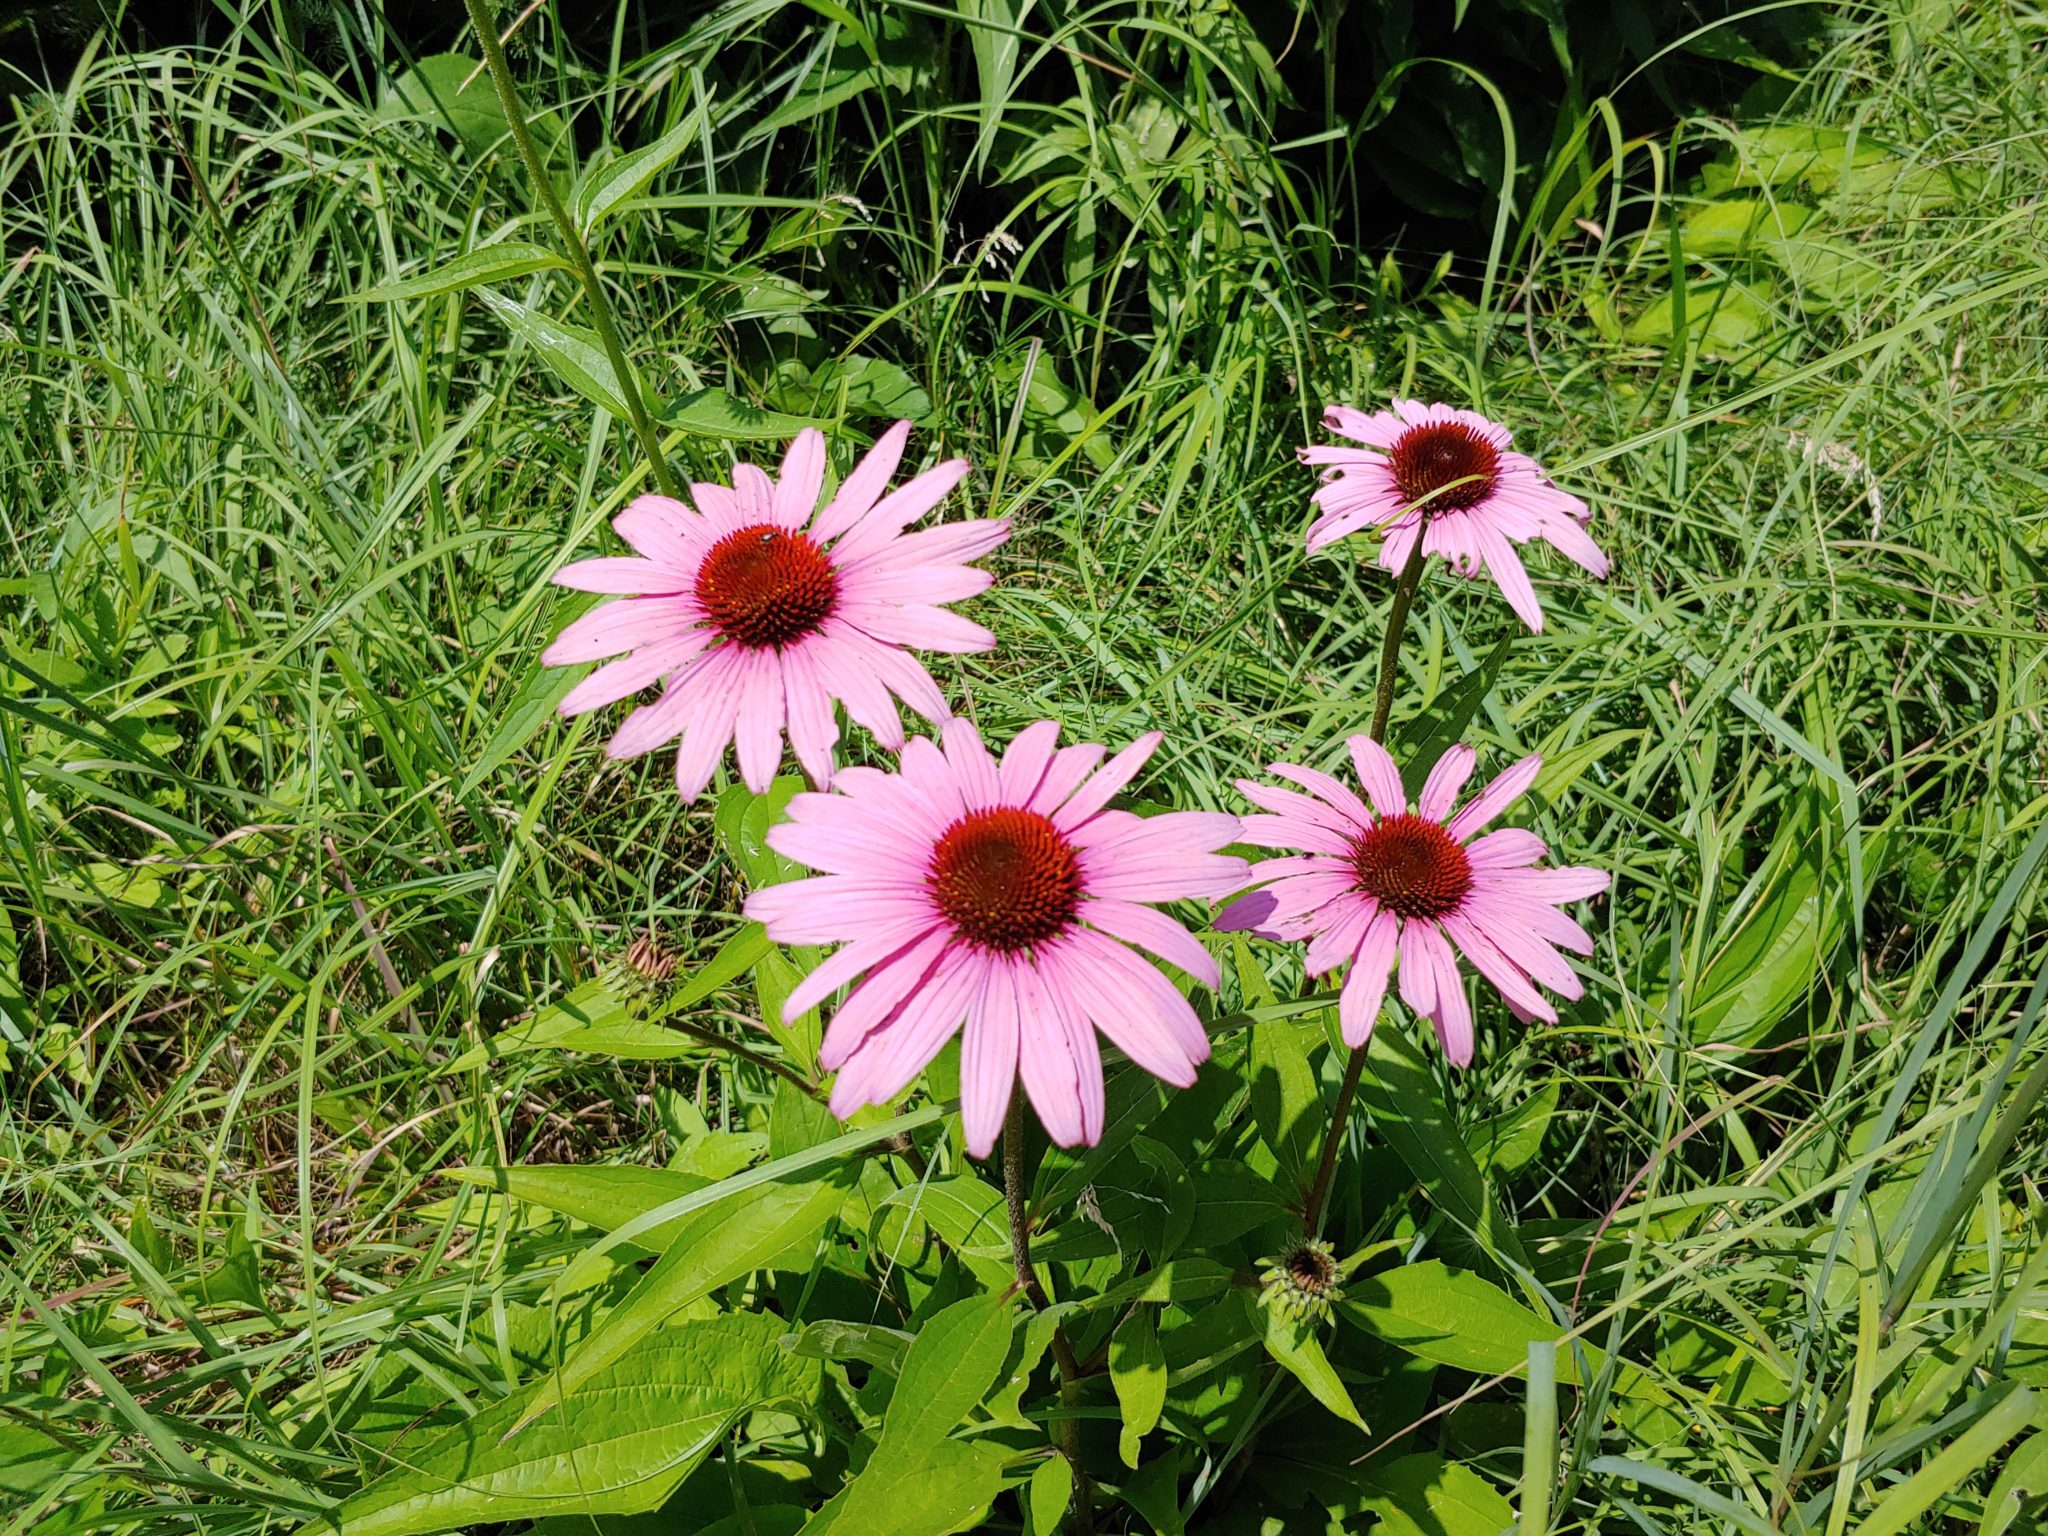 cone flowers pollinator habitat